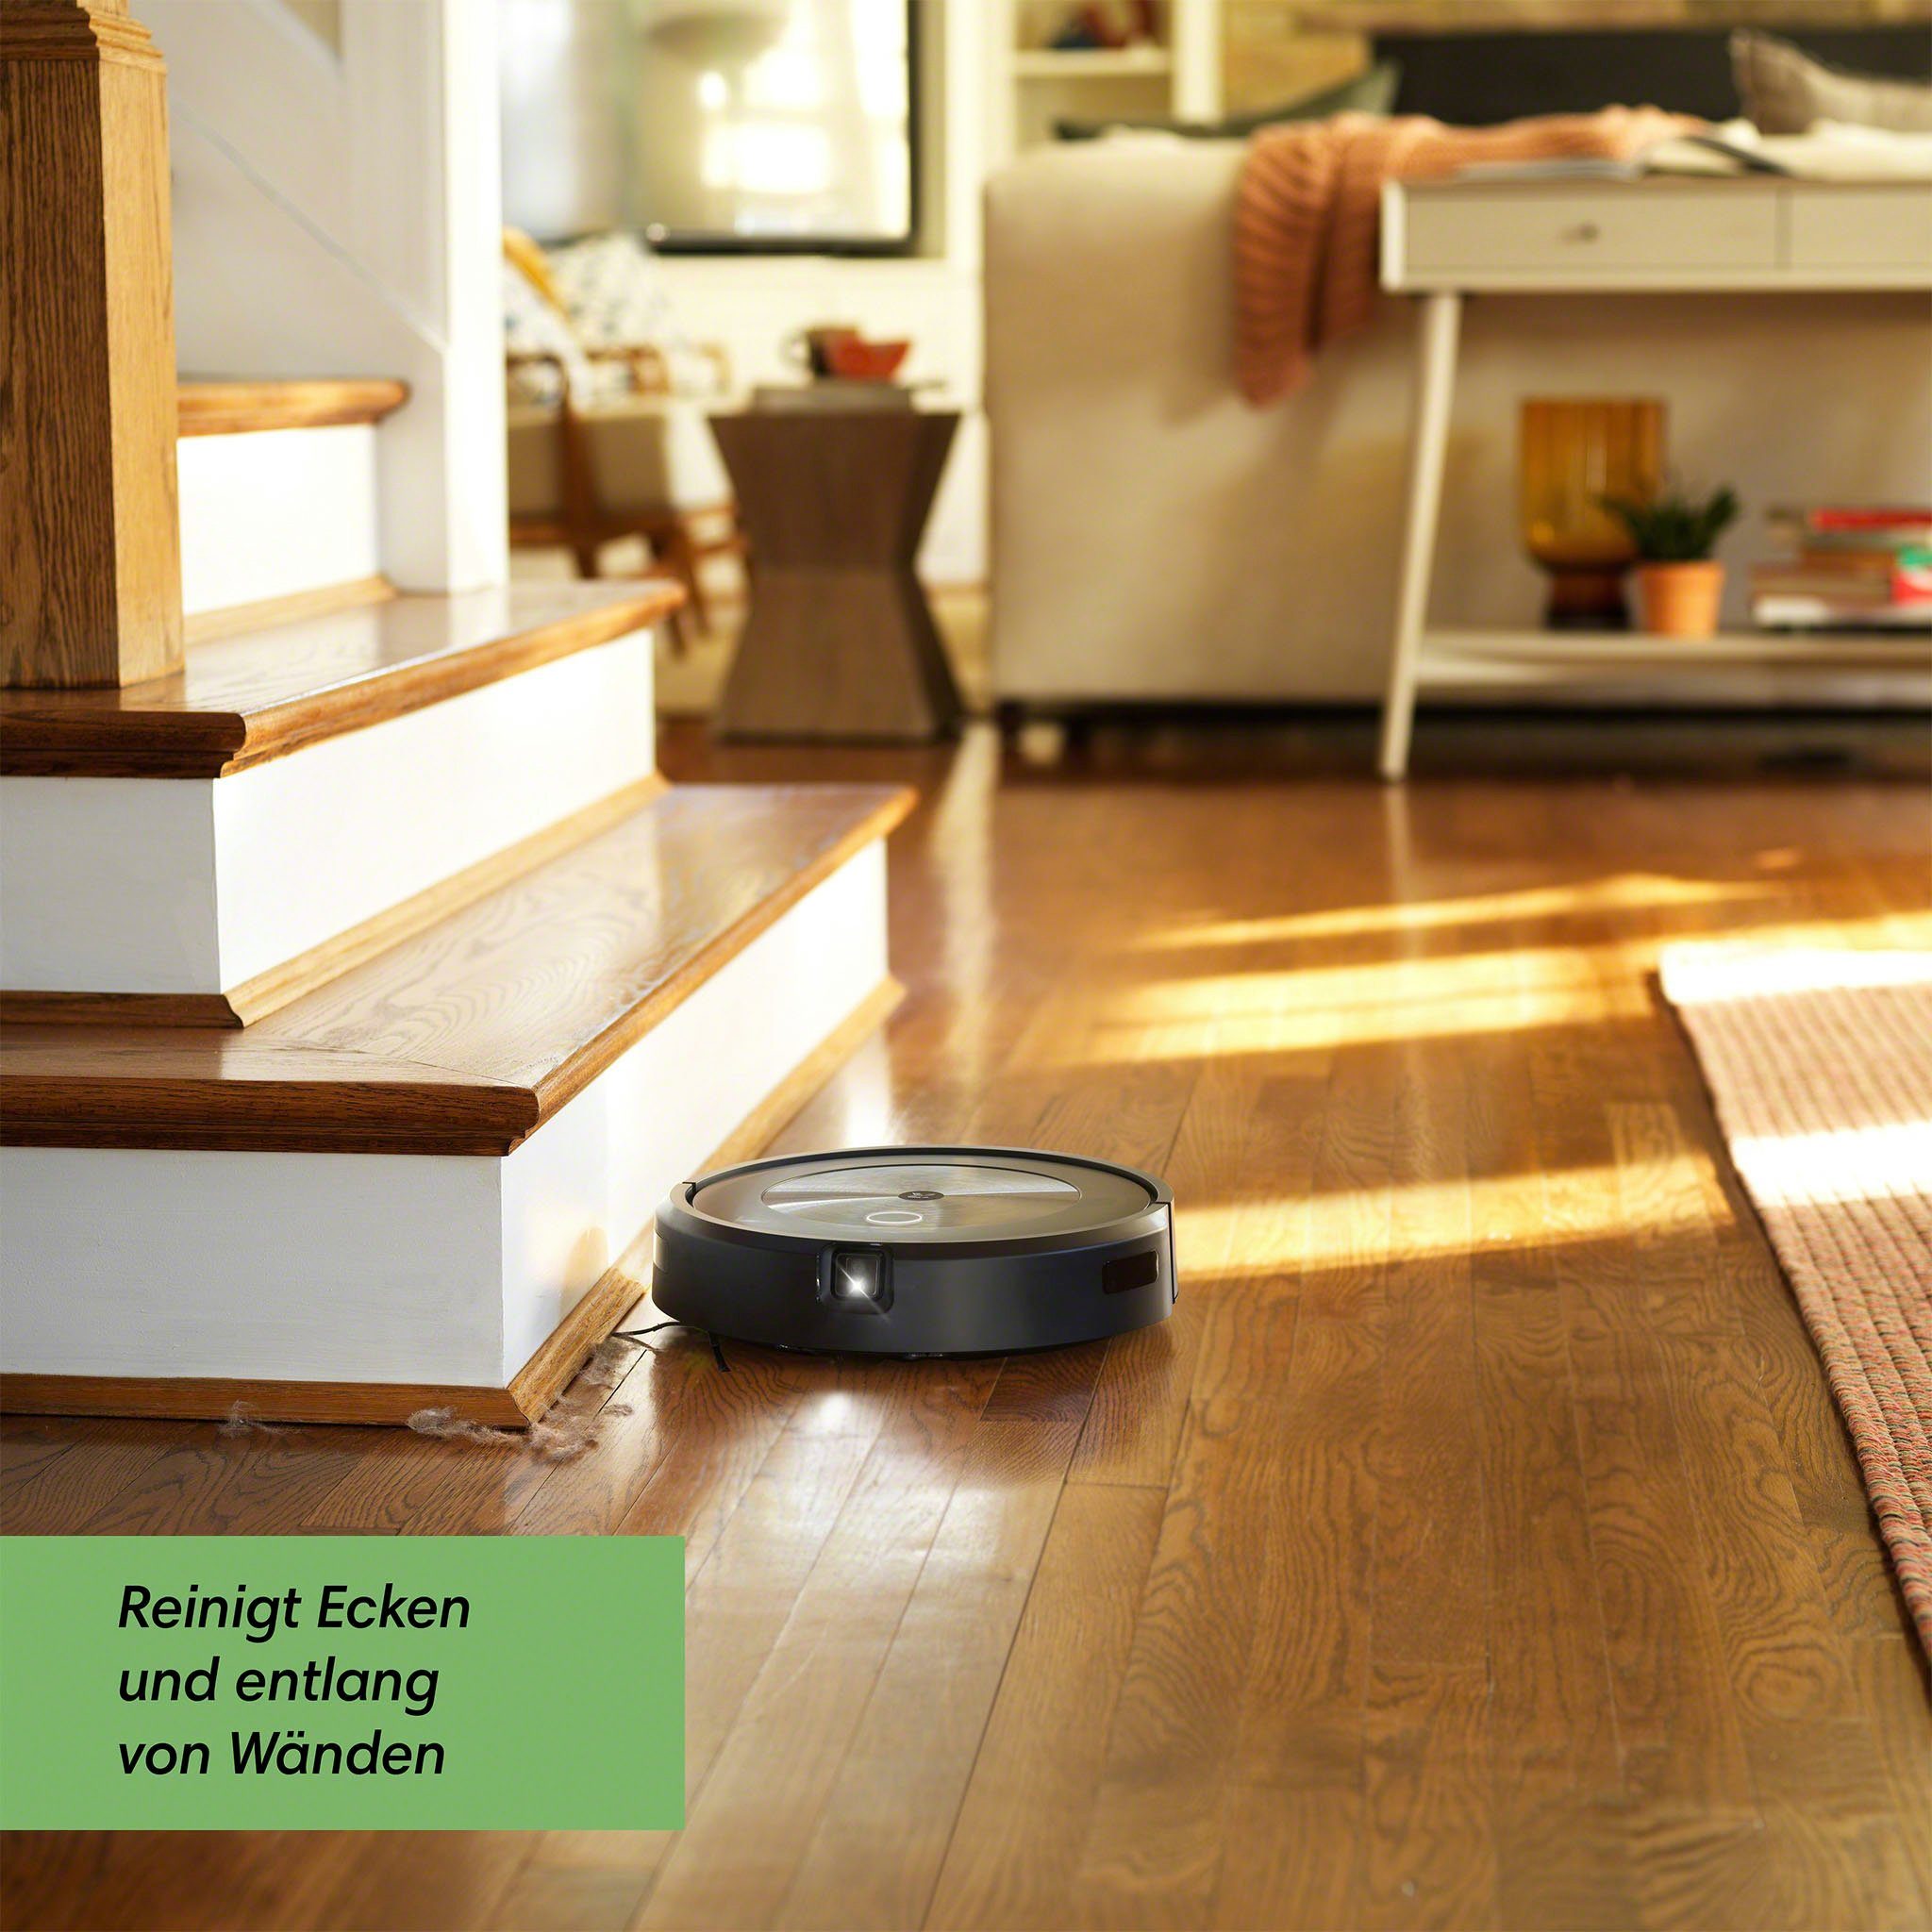 Objekterkennung WLAN-fähig, Saugroboter Roomba® j7 iRobot beutellos, (j7158), Kartierung,